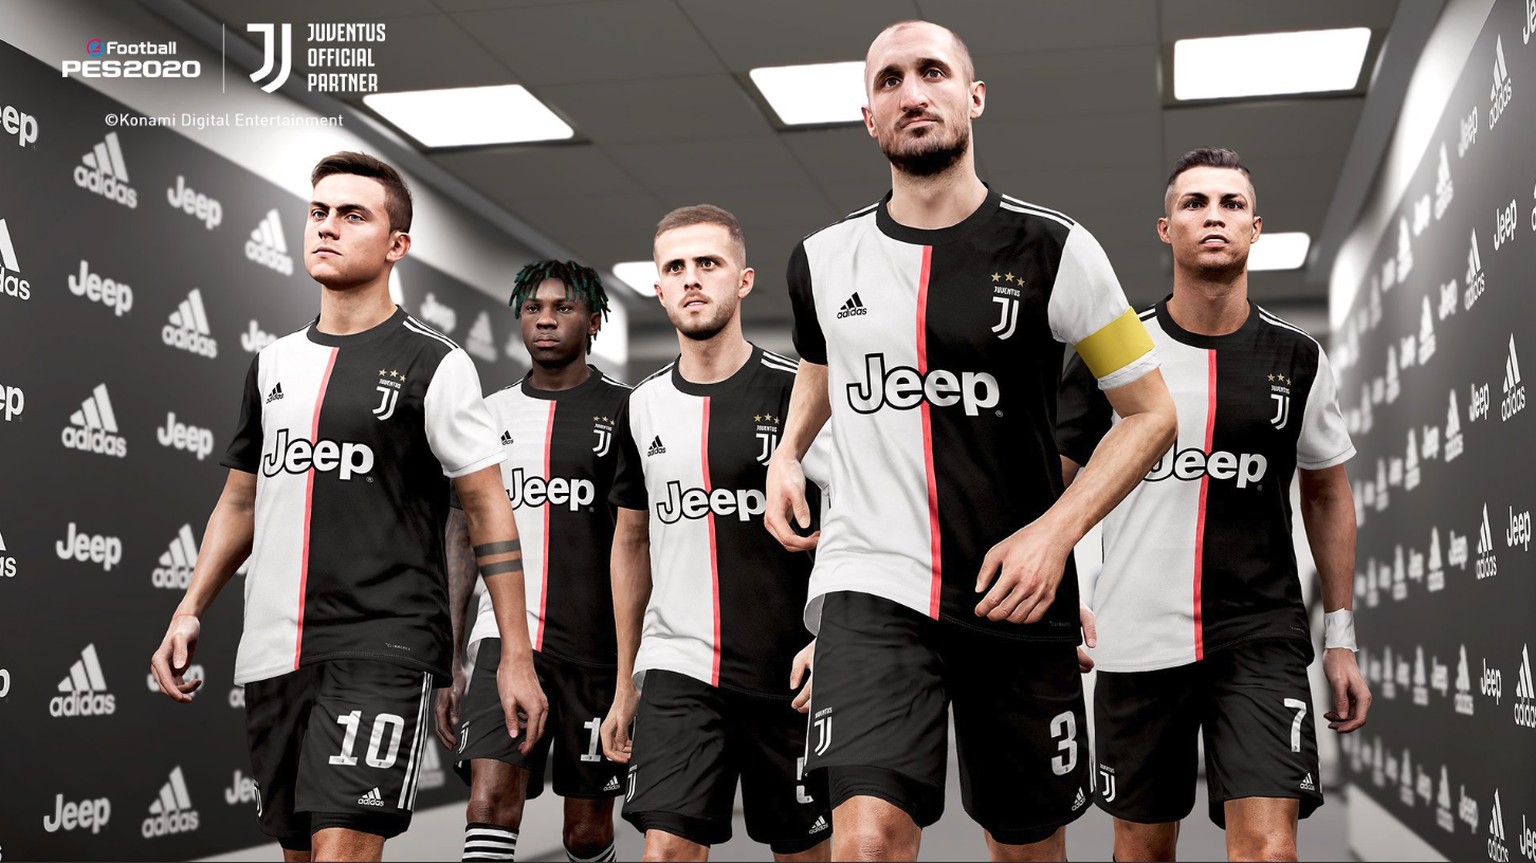 Darum heisst Juventus Turin im neusten FIFA-Game «Piemonte Calcio»